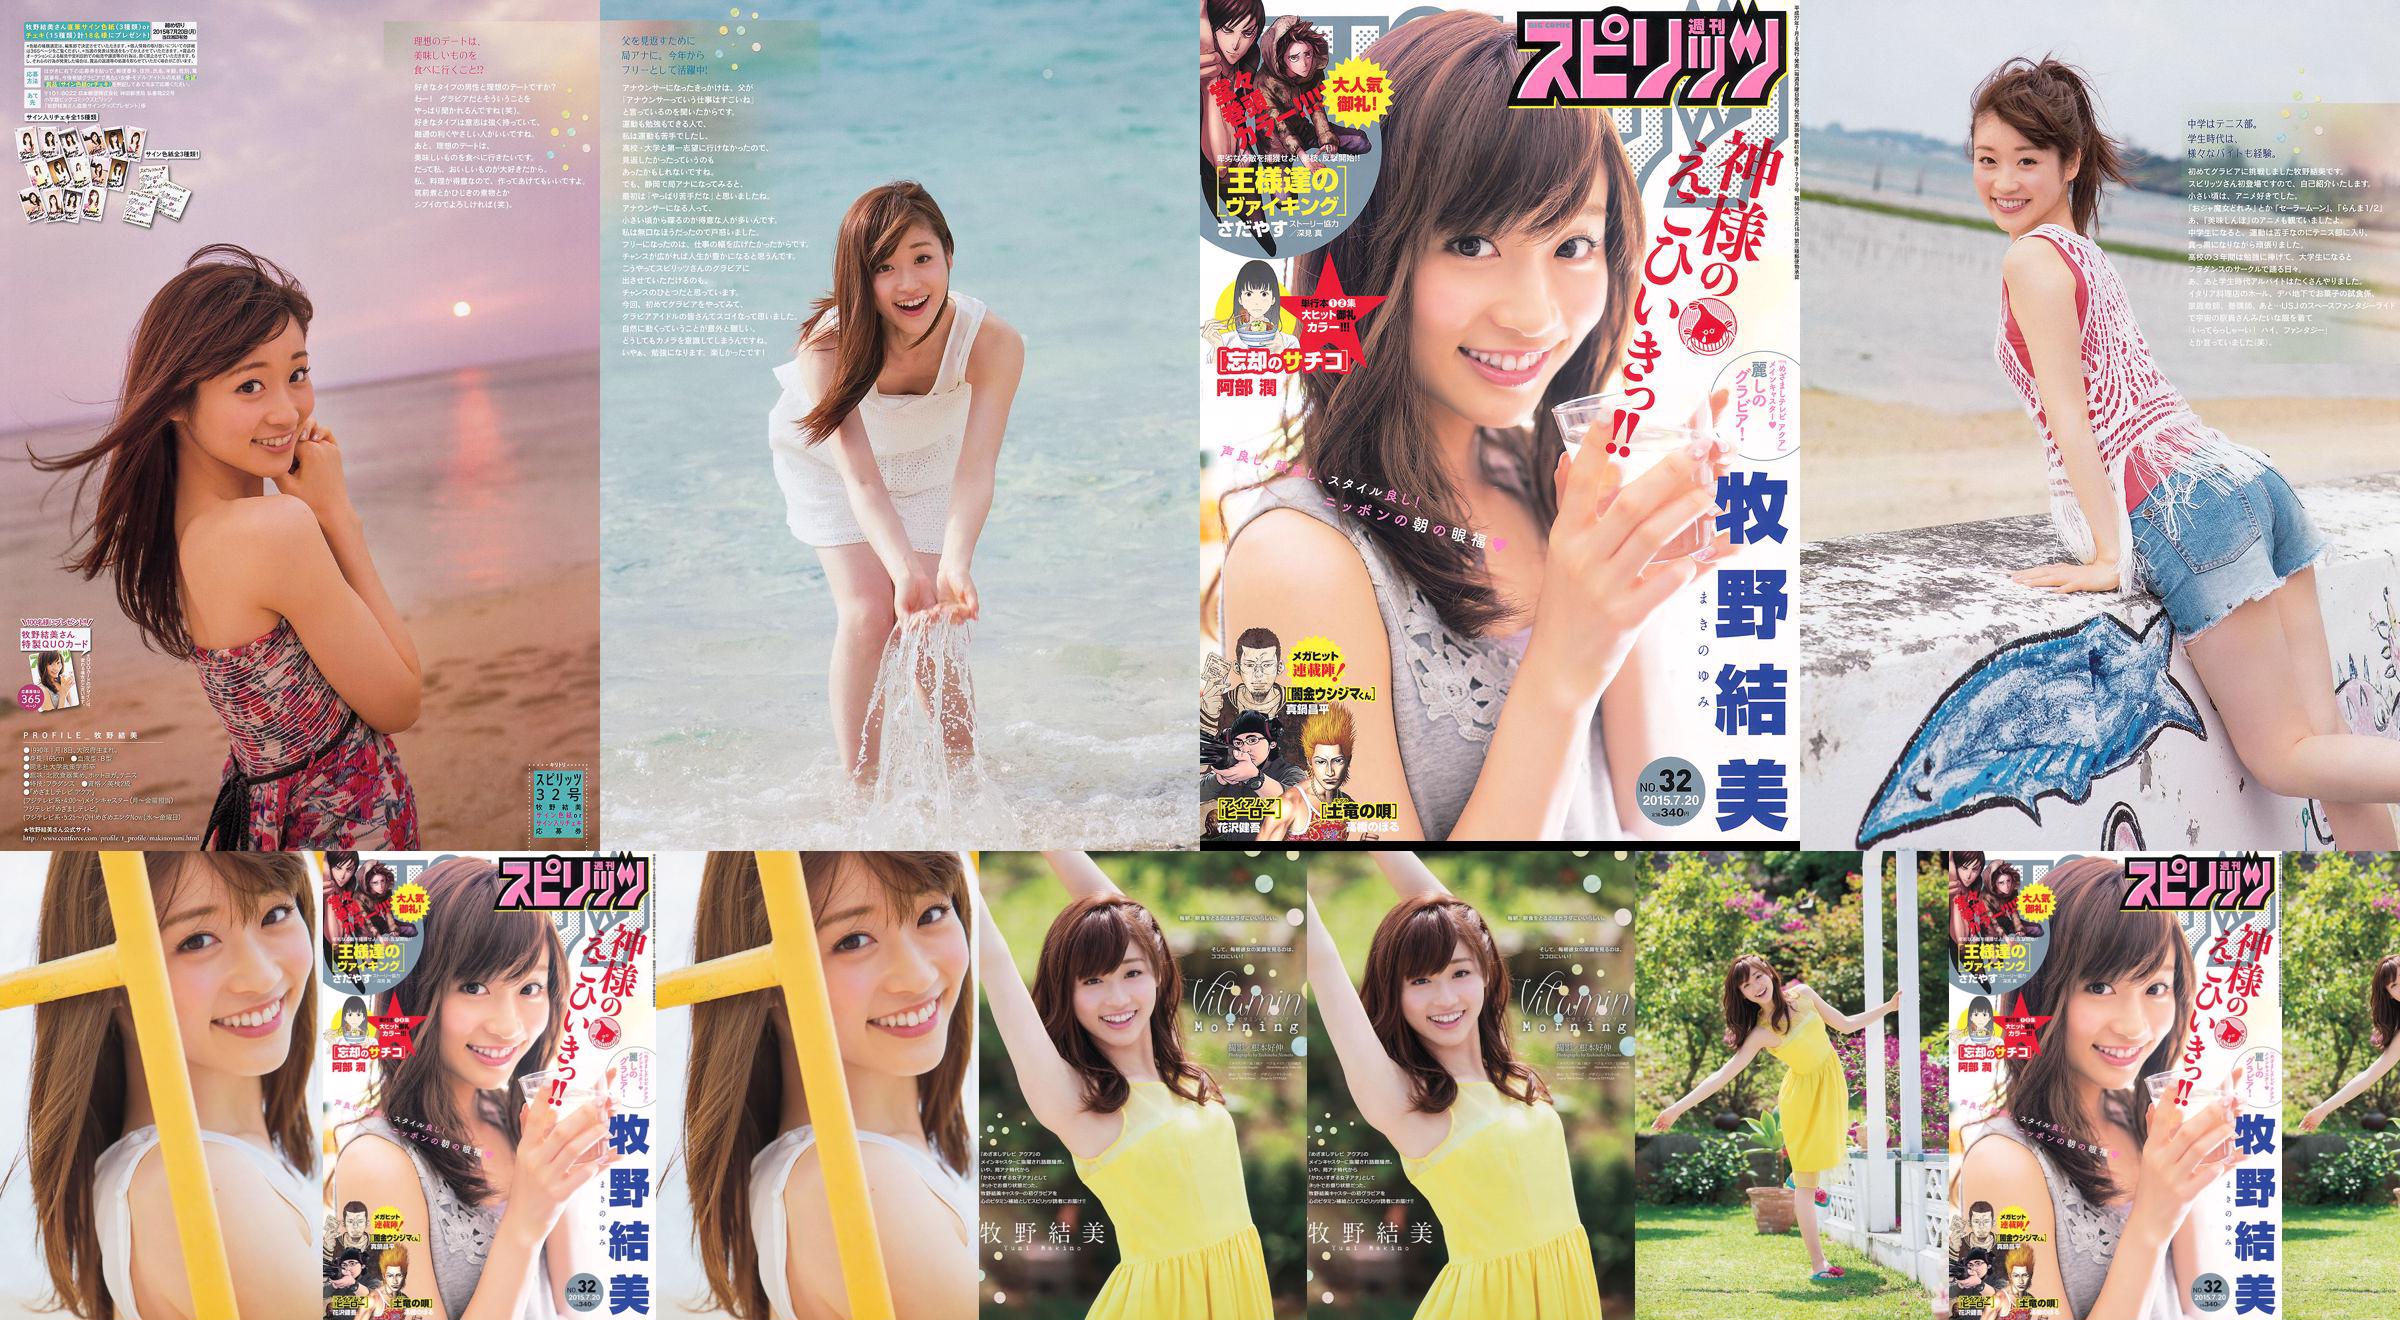 [Weekly Big Comic Spirits] Yumi Makino 2015 No.32 Photo Magazine No.17e66b Page 1